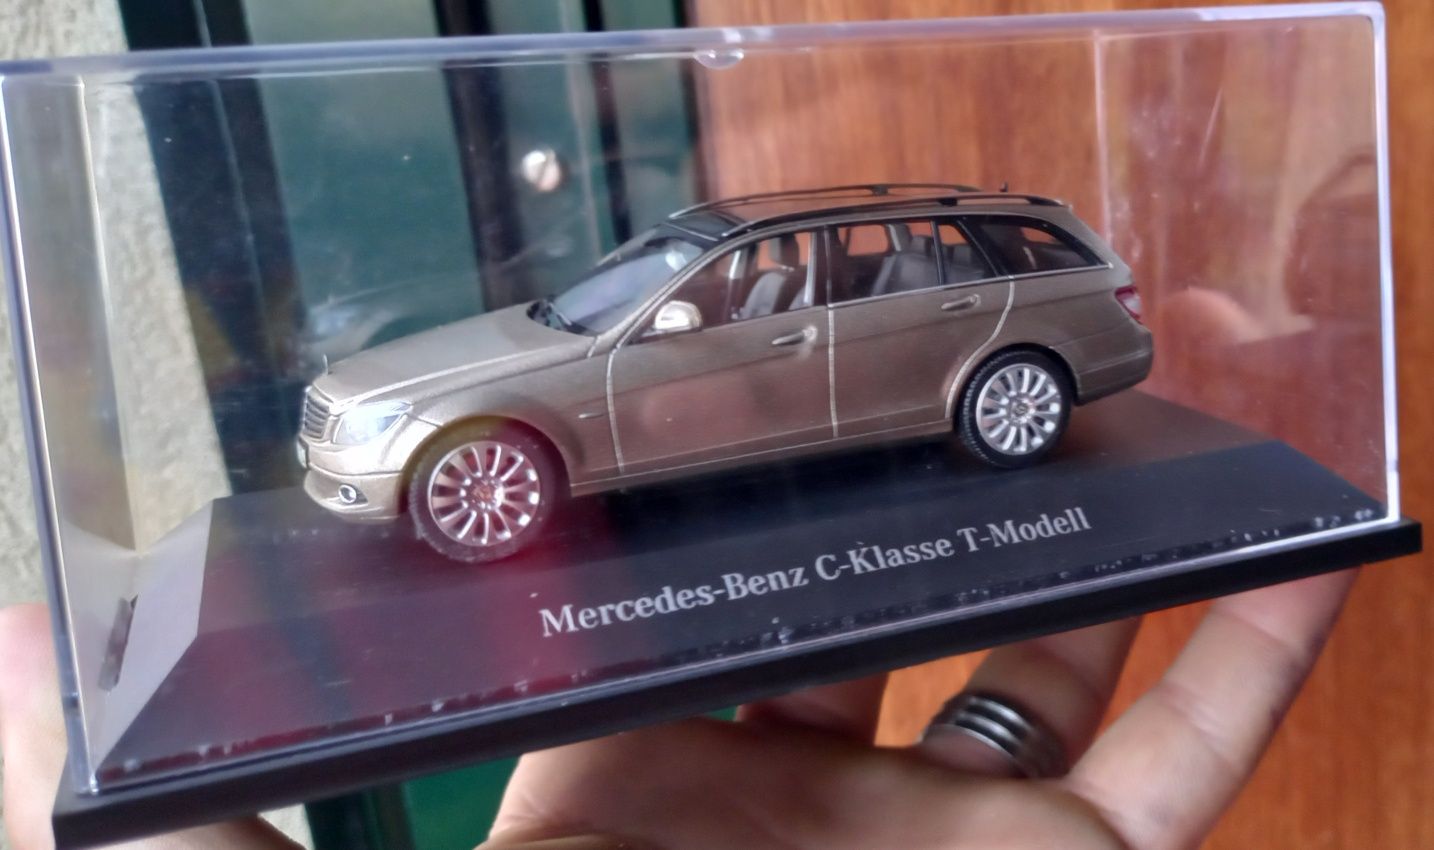 Mercedes-Benz C klass T modell (novo ,  escala 1/43)